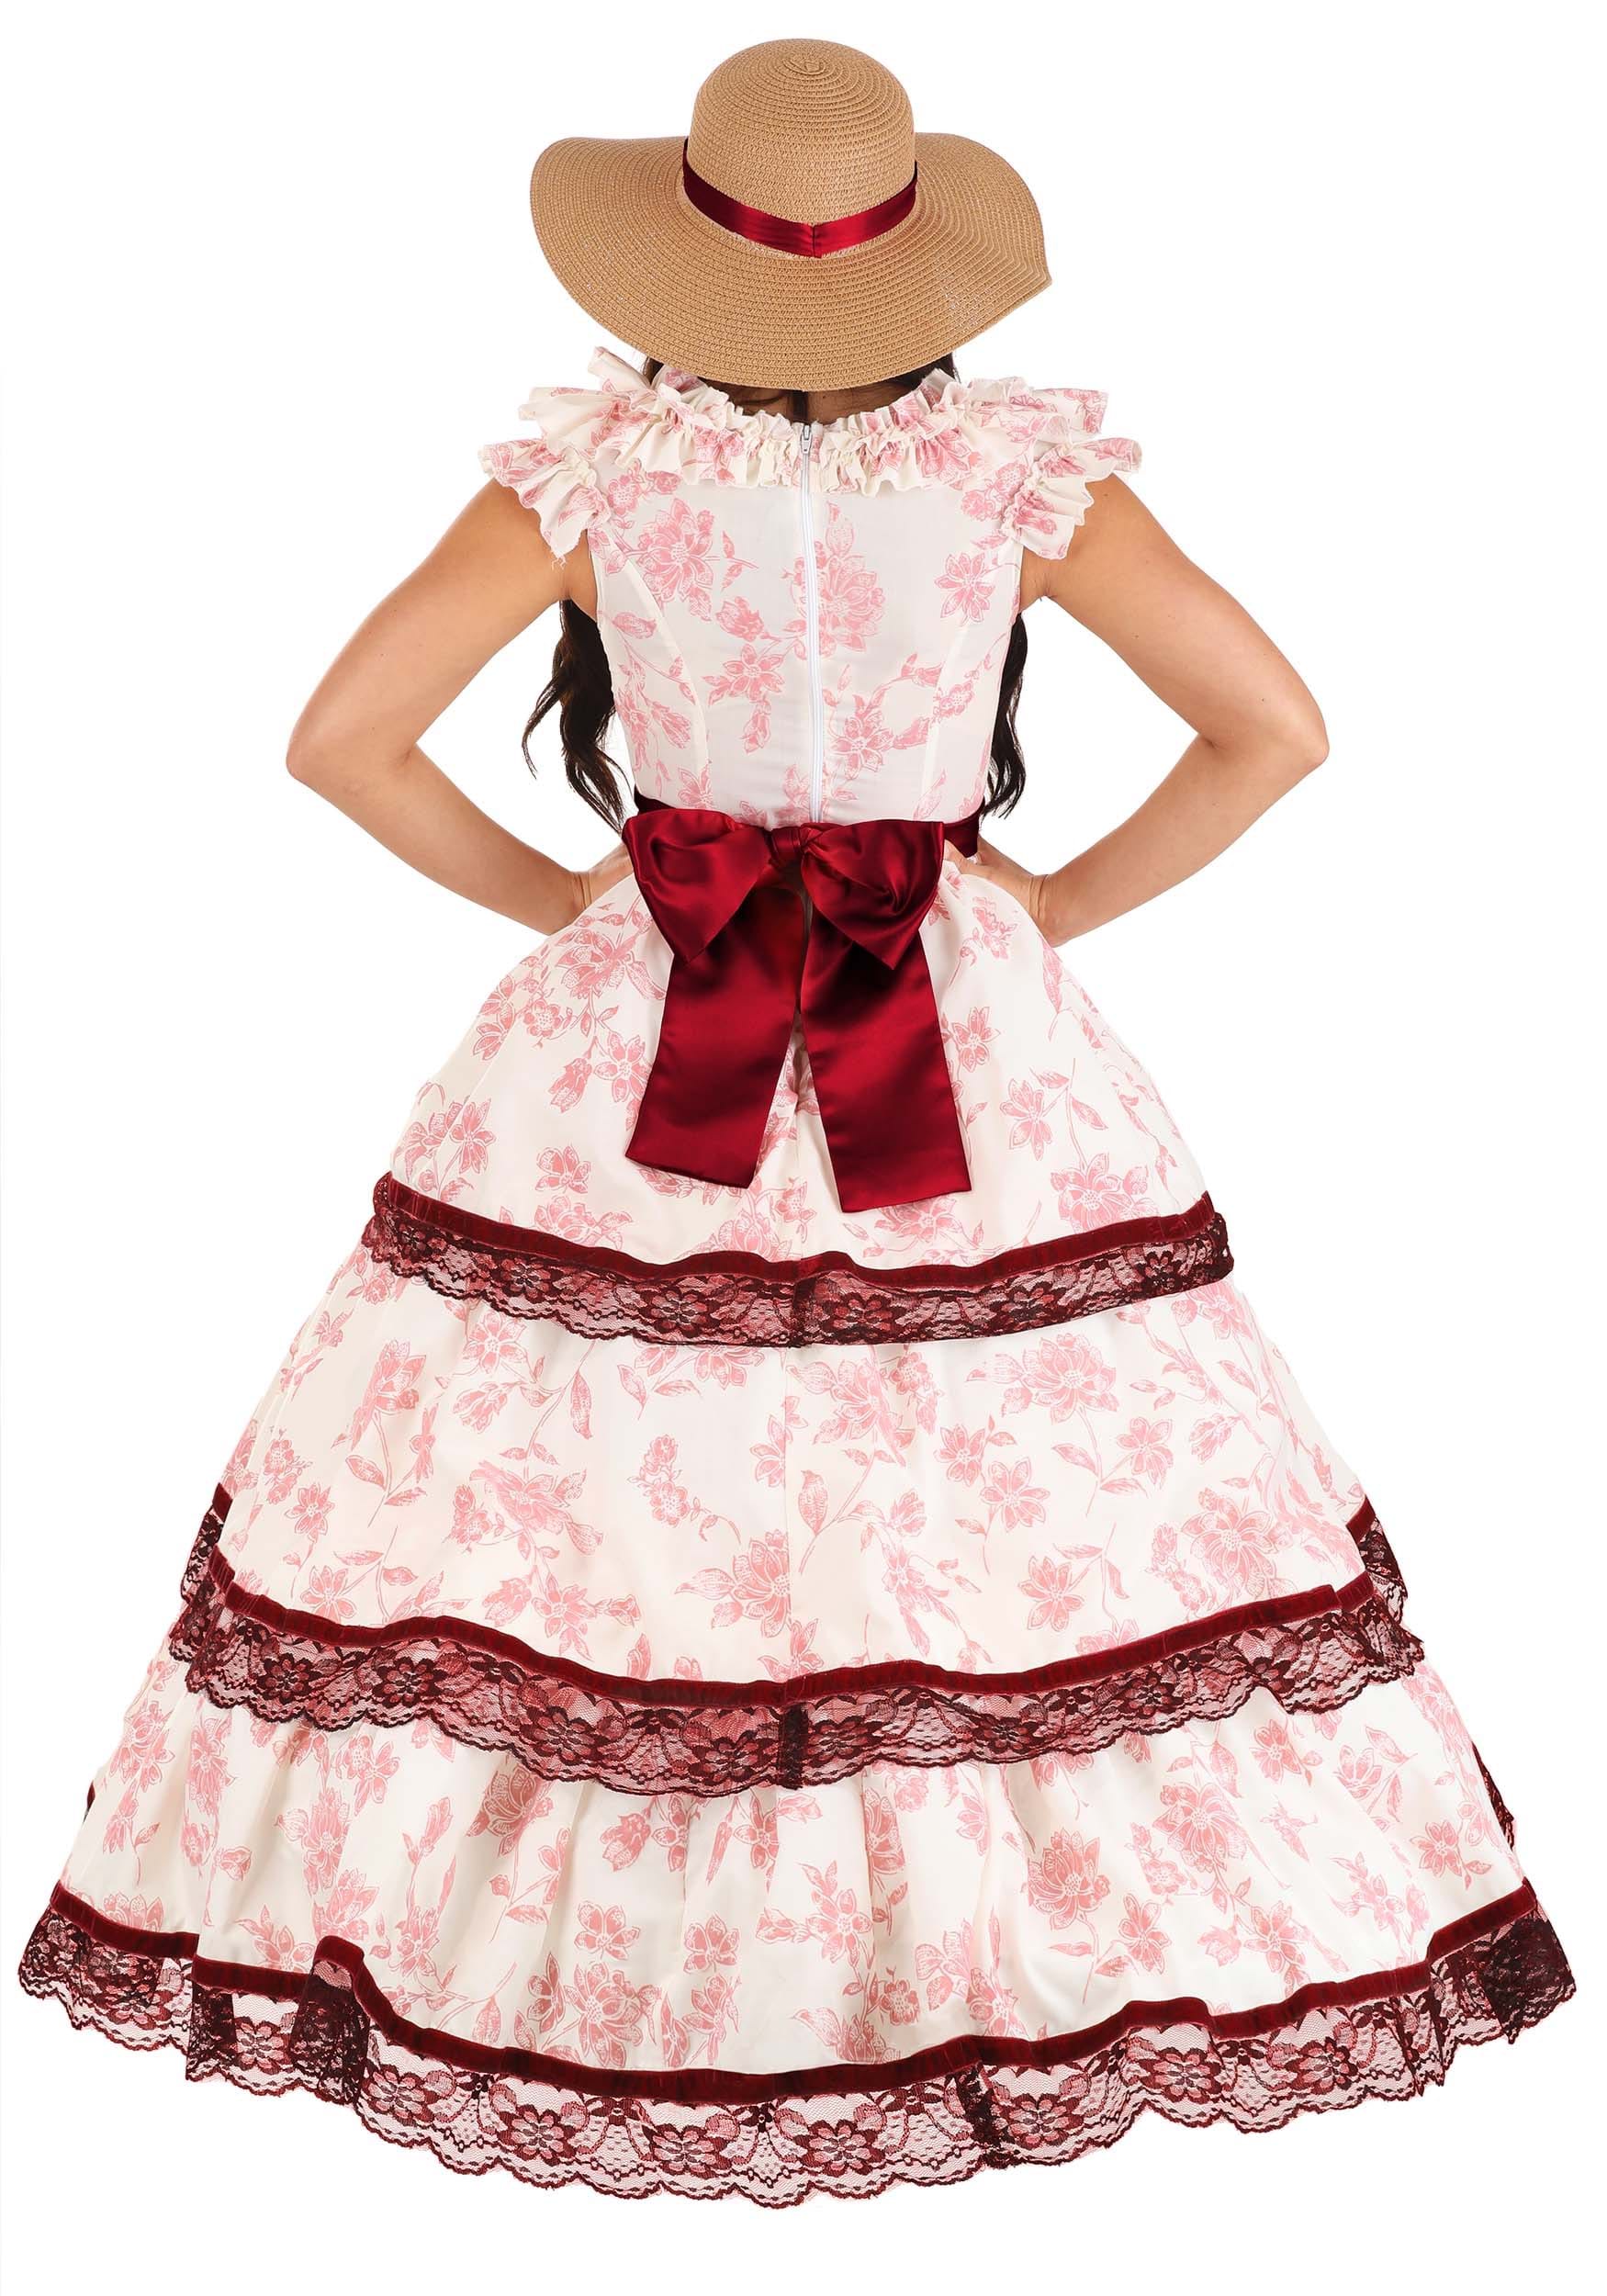 Southern Belle Women's Fancy Dress Costume